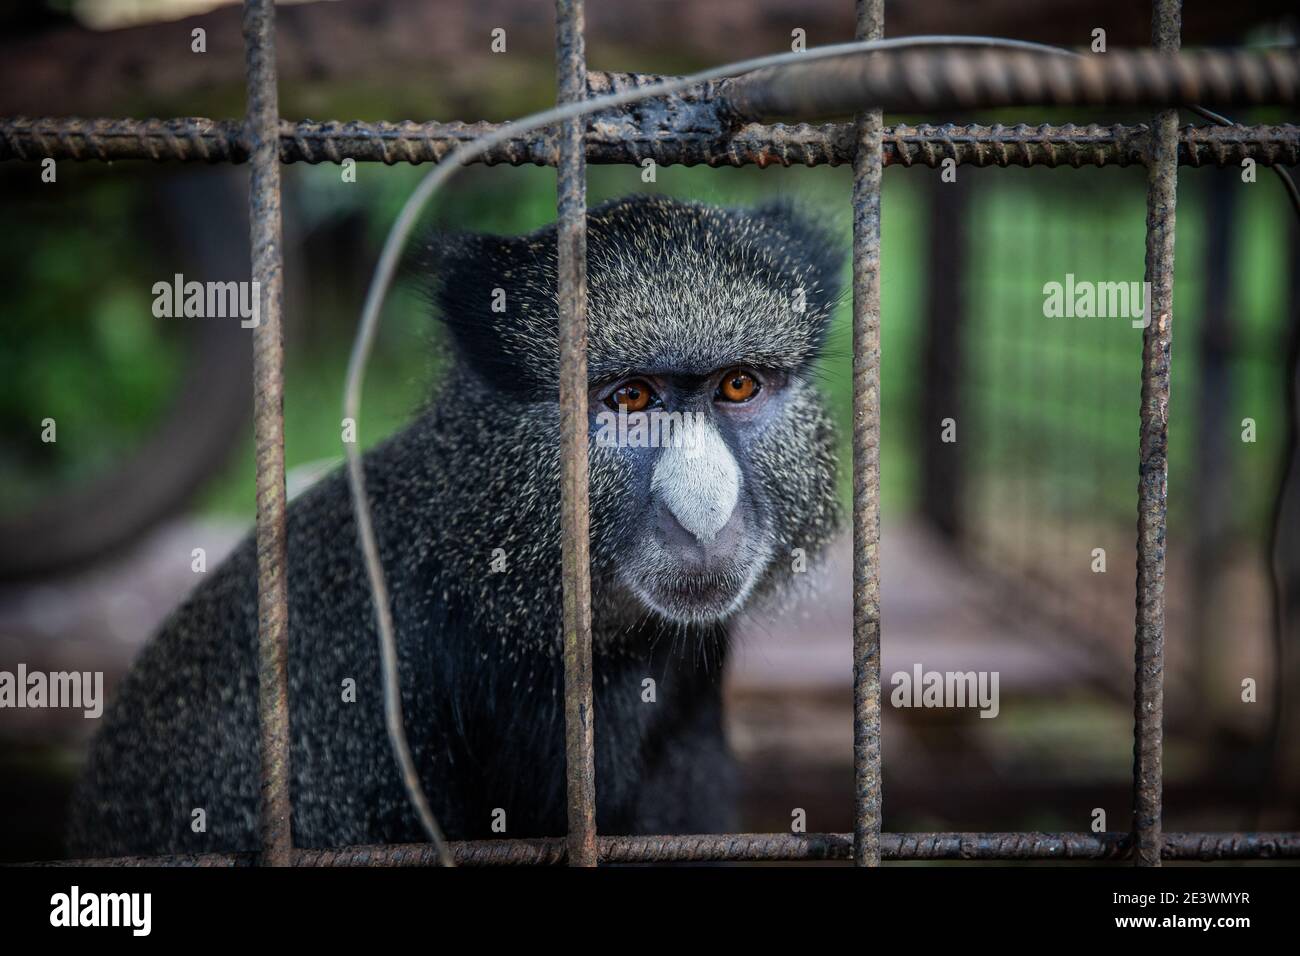 Porträt eines Cercopithecus kandti, eine Art Affe, eingesperrt in einem Käfig. Konzept der Tierrechte Stockfoto